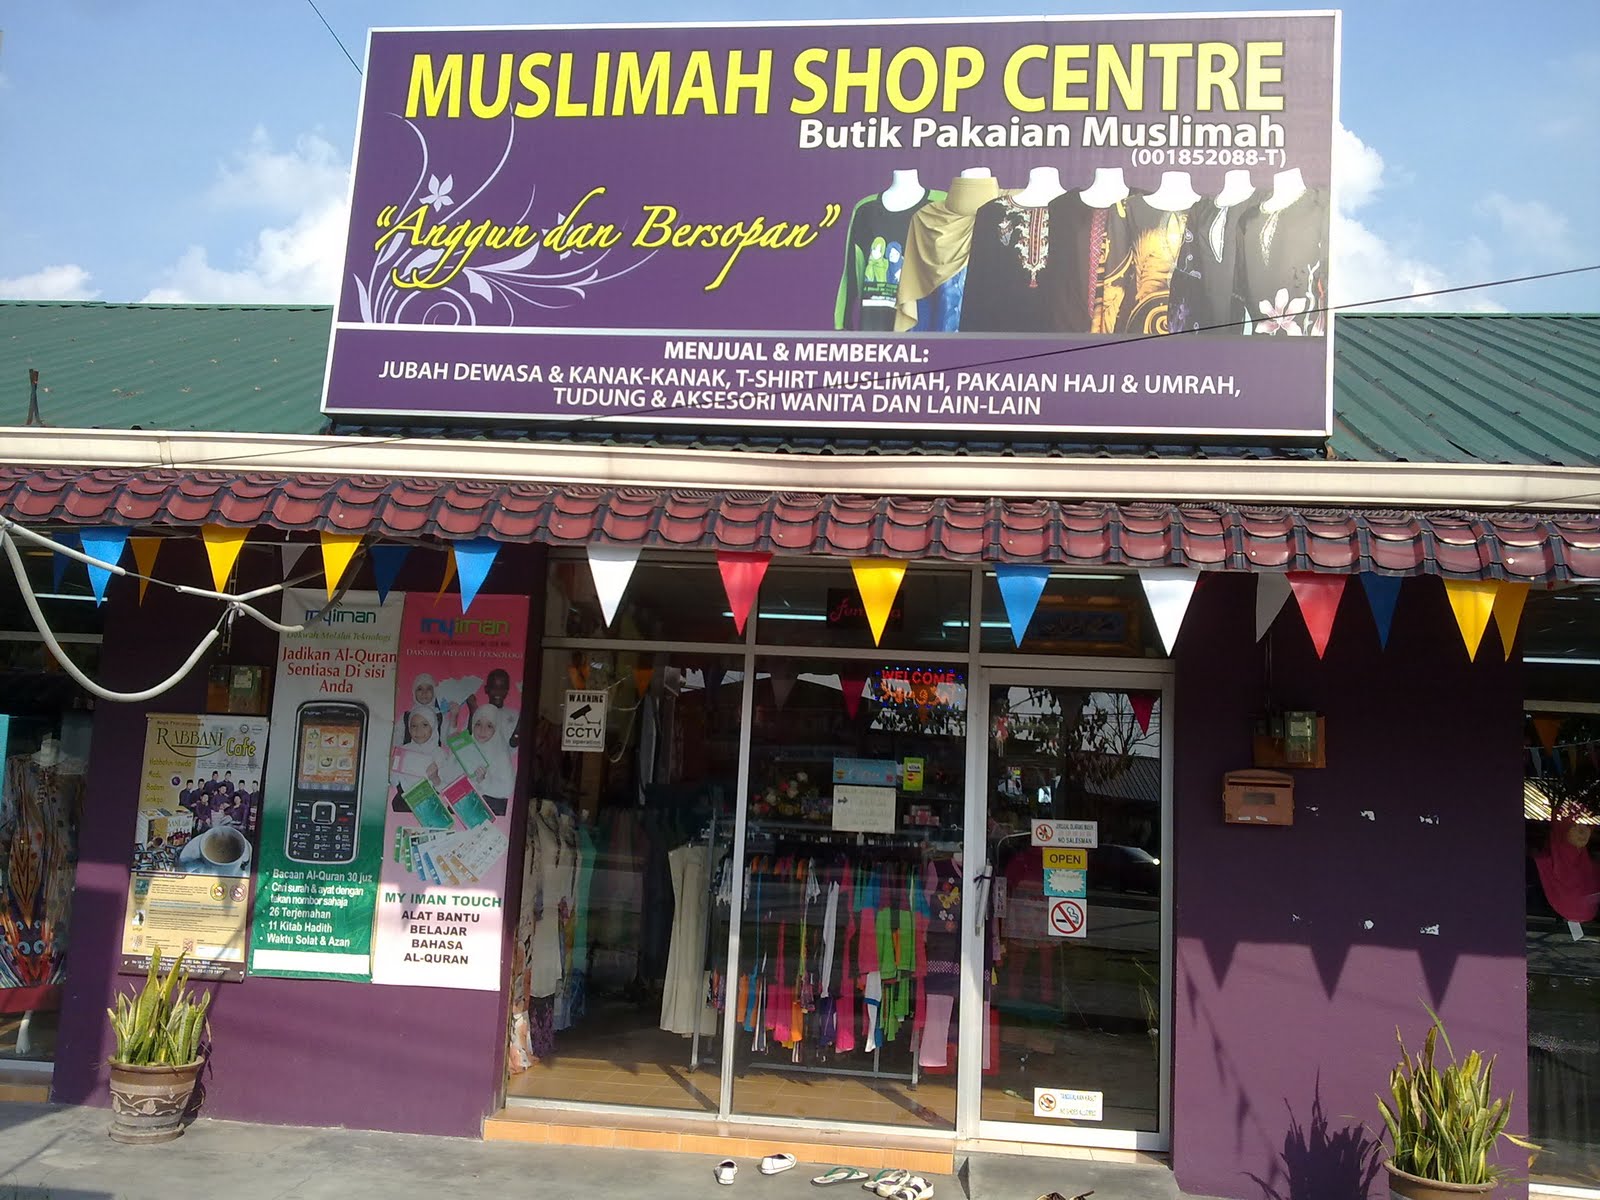  Baju  Renang  untuk Muslimah  Baju  renang  muslimah  kini 